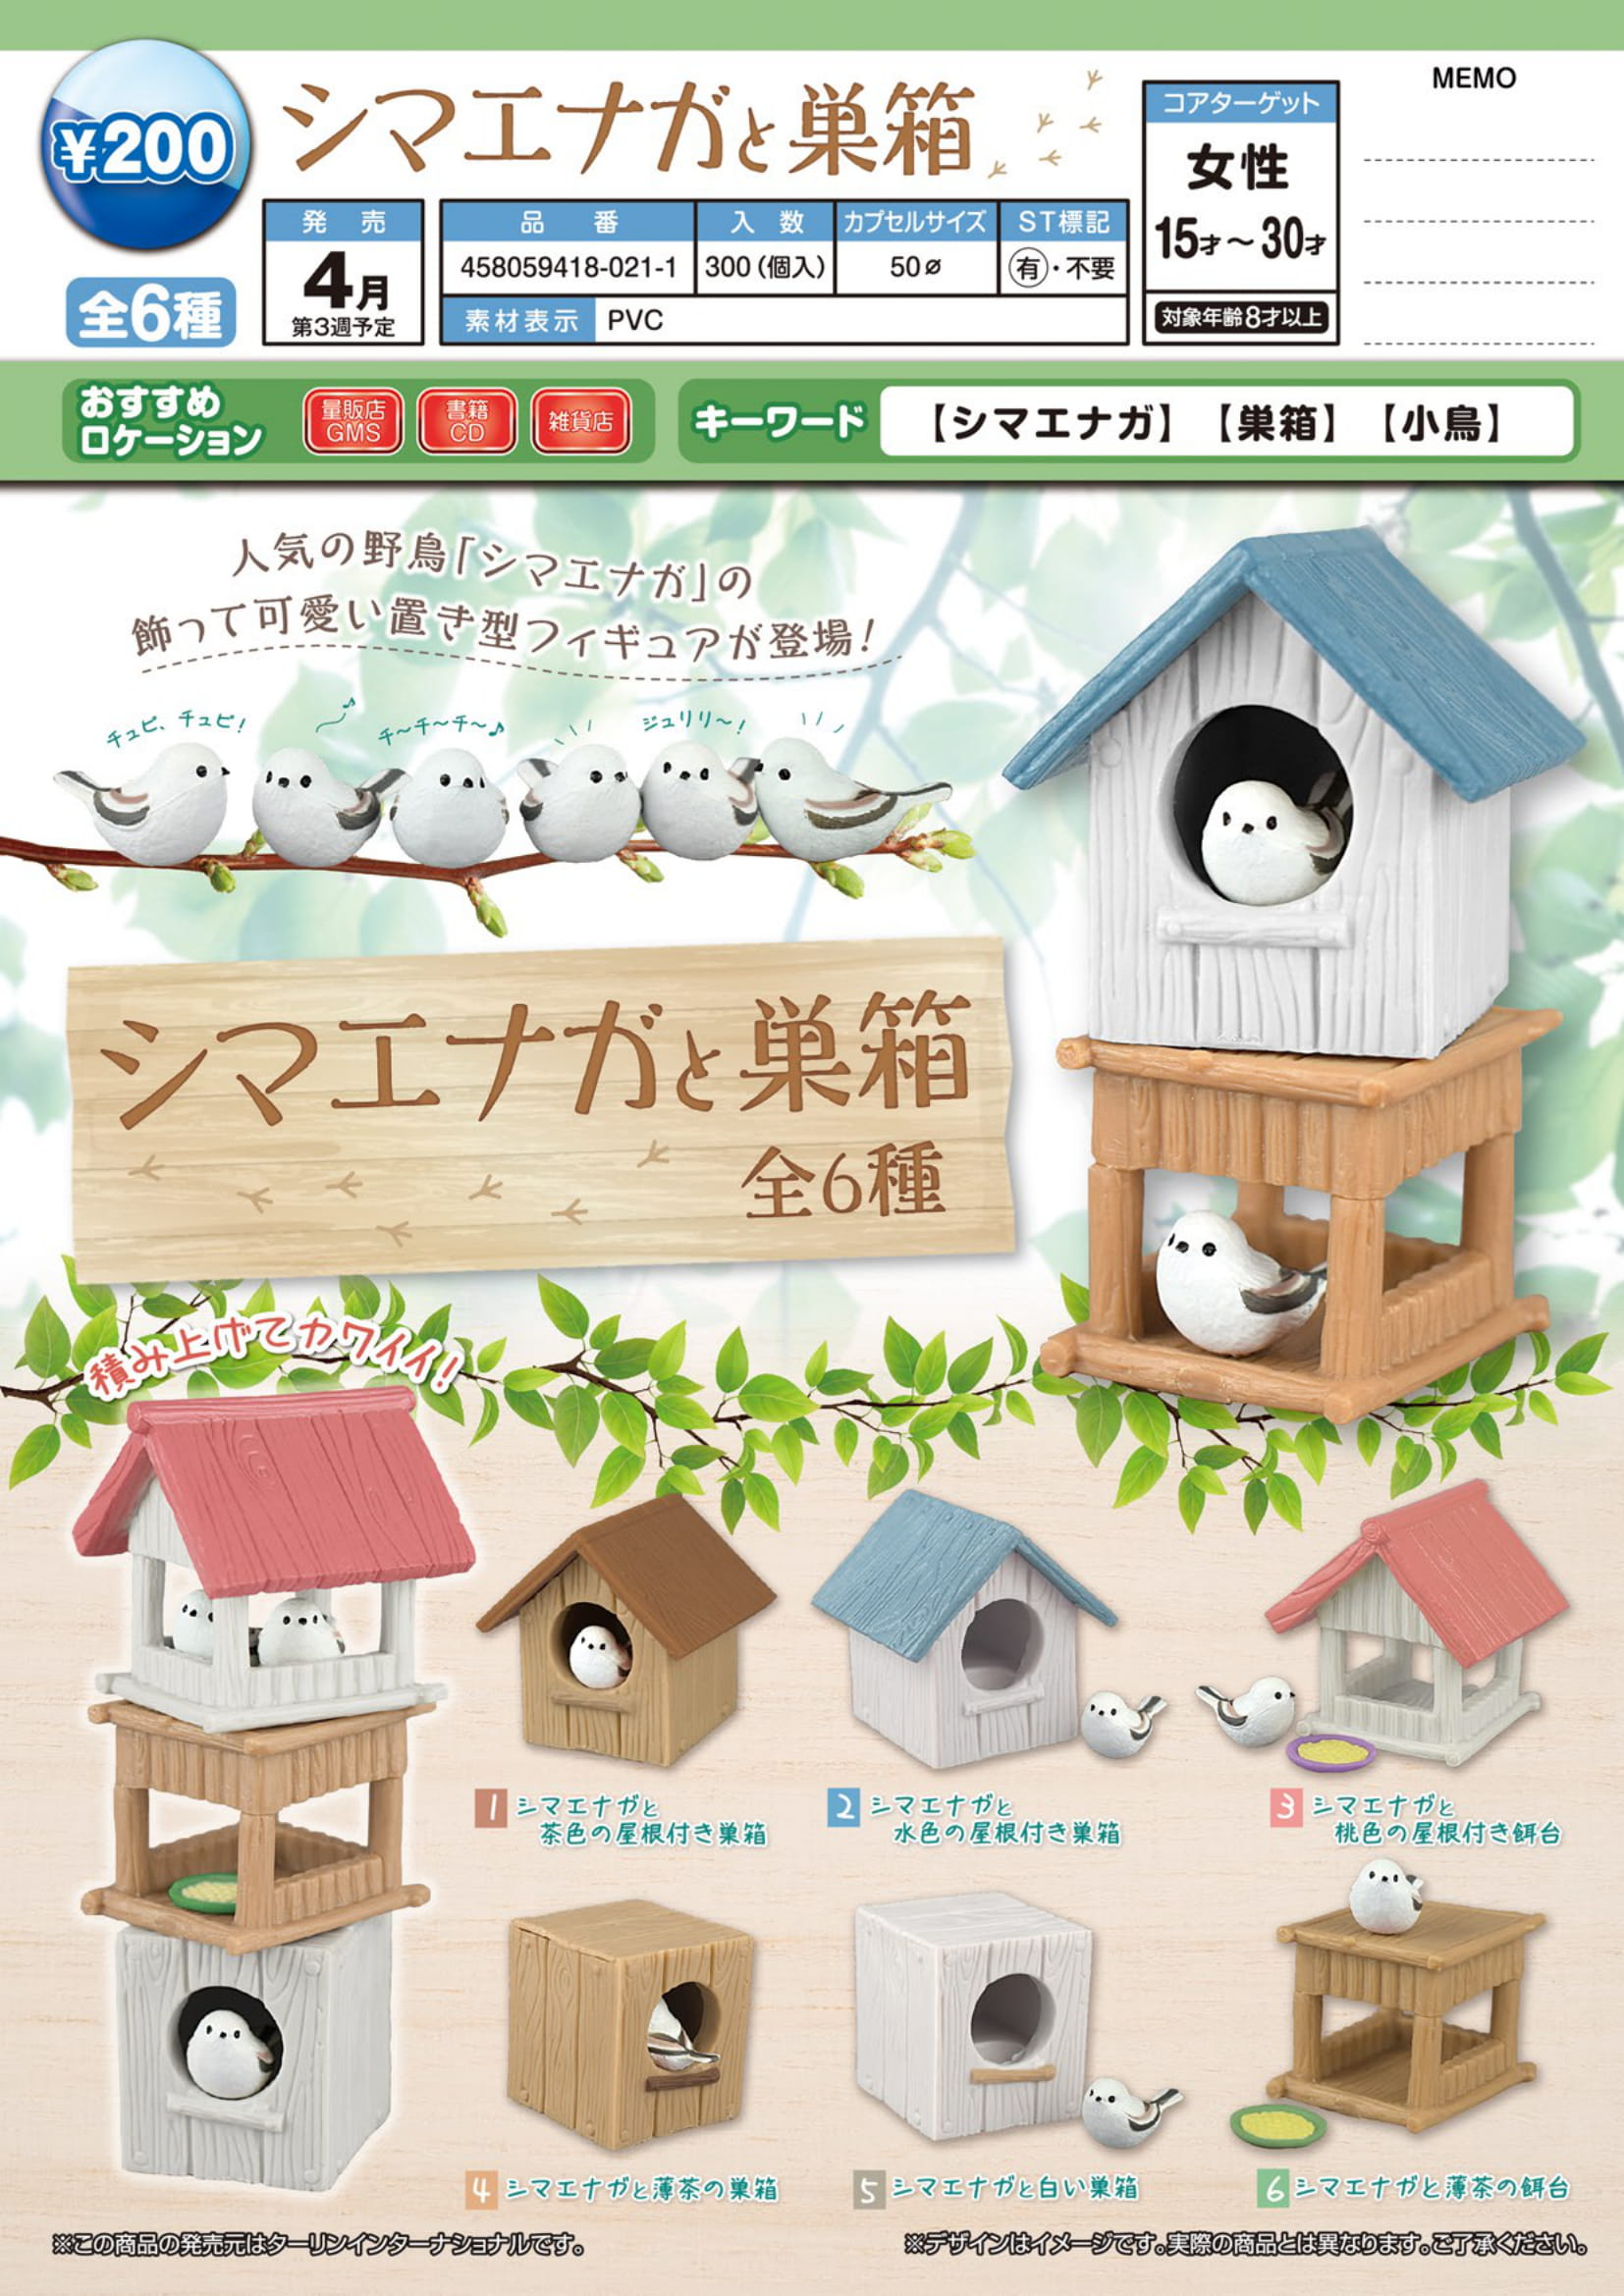 现货日本EPOCH扭蛋 乌鸦模型 鸟笼鸽子摆件 银喉长尾雀的鸟屋